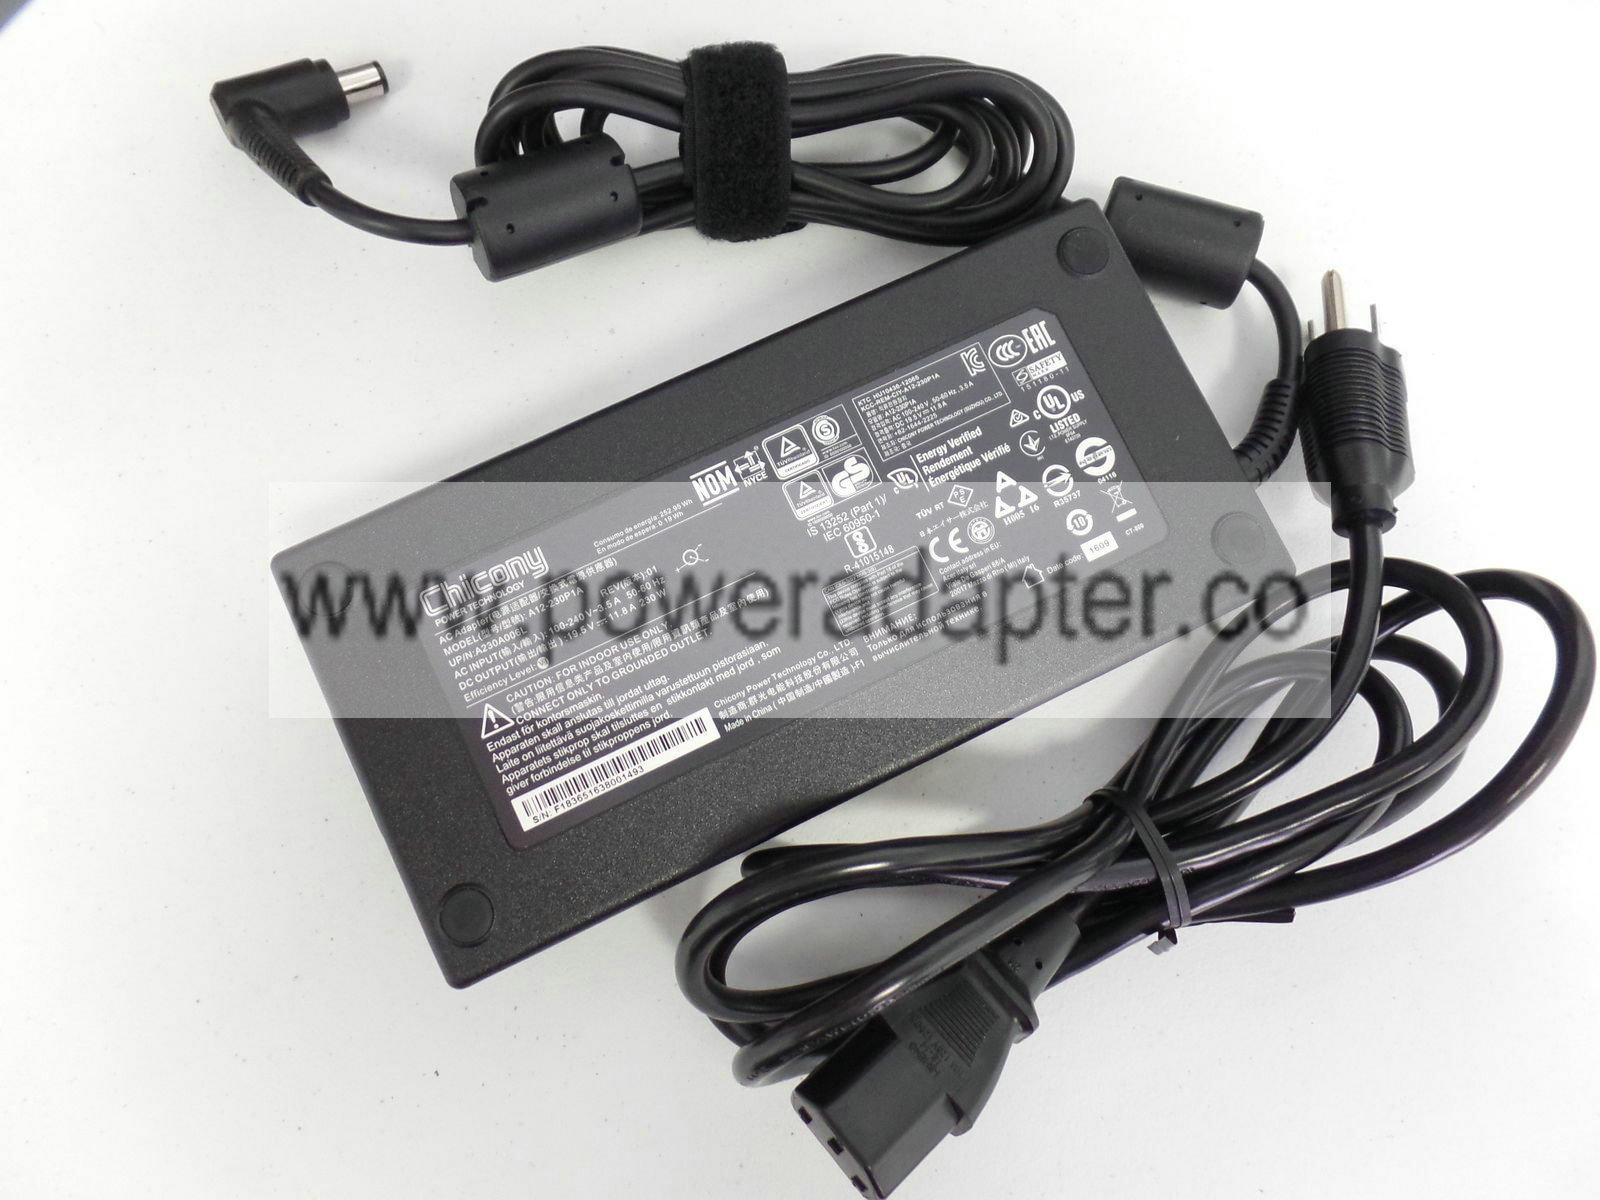 @Original OEM Chicony Acer 230W 19.5V AC Adapter for Acer Predator PT715-51-732Q 100% Original Genuine OEM Chicony Acer